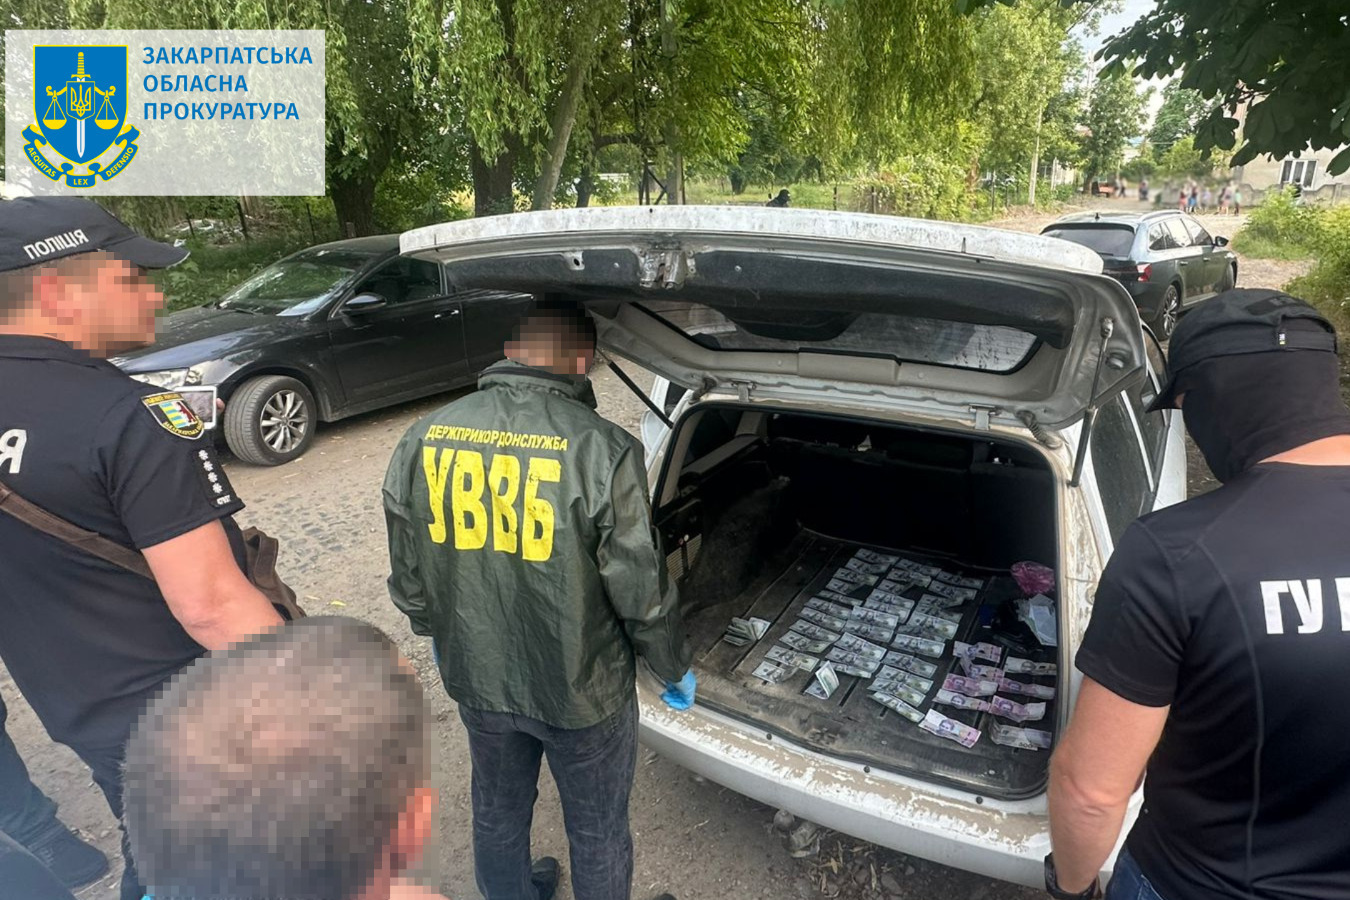 Організували незаконний перетин кордону з Румунією за 8000 євро – на Закарпатті судитимуть двох місцевих жителів